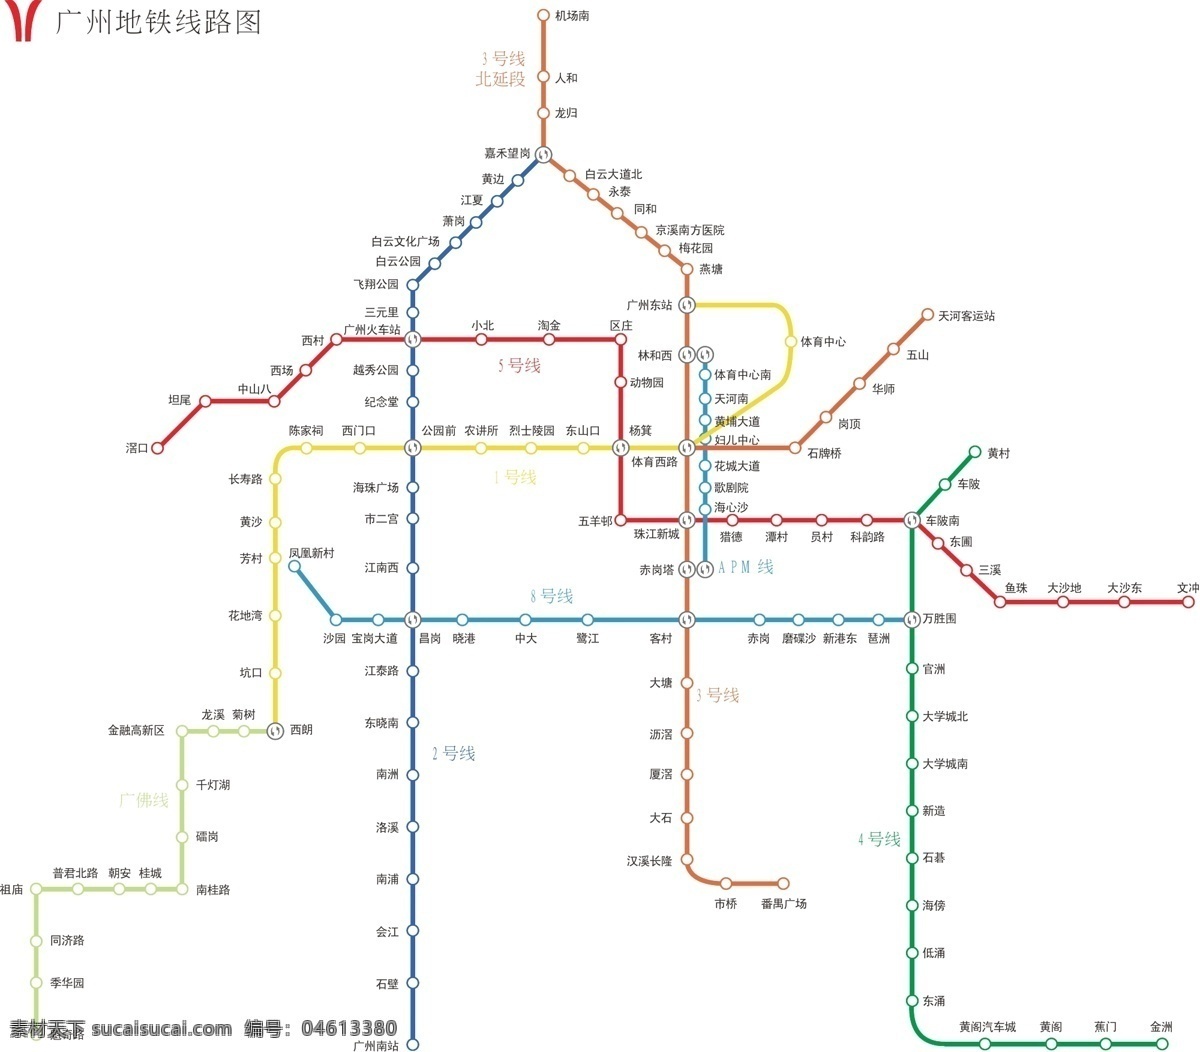 最新 广州 地铁 线路图 广州地铁 路线图 地铁图 建筑家居 矢量